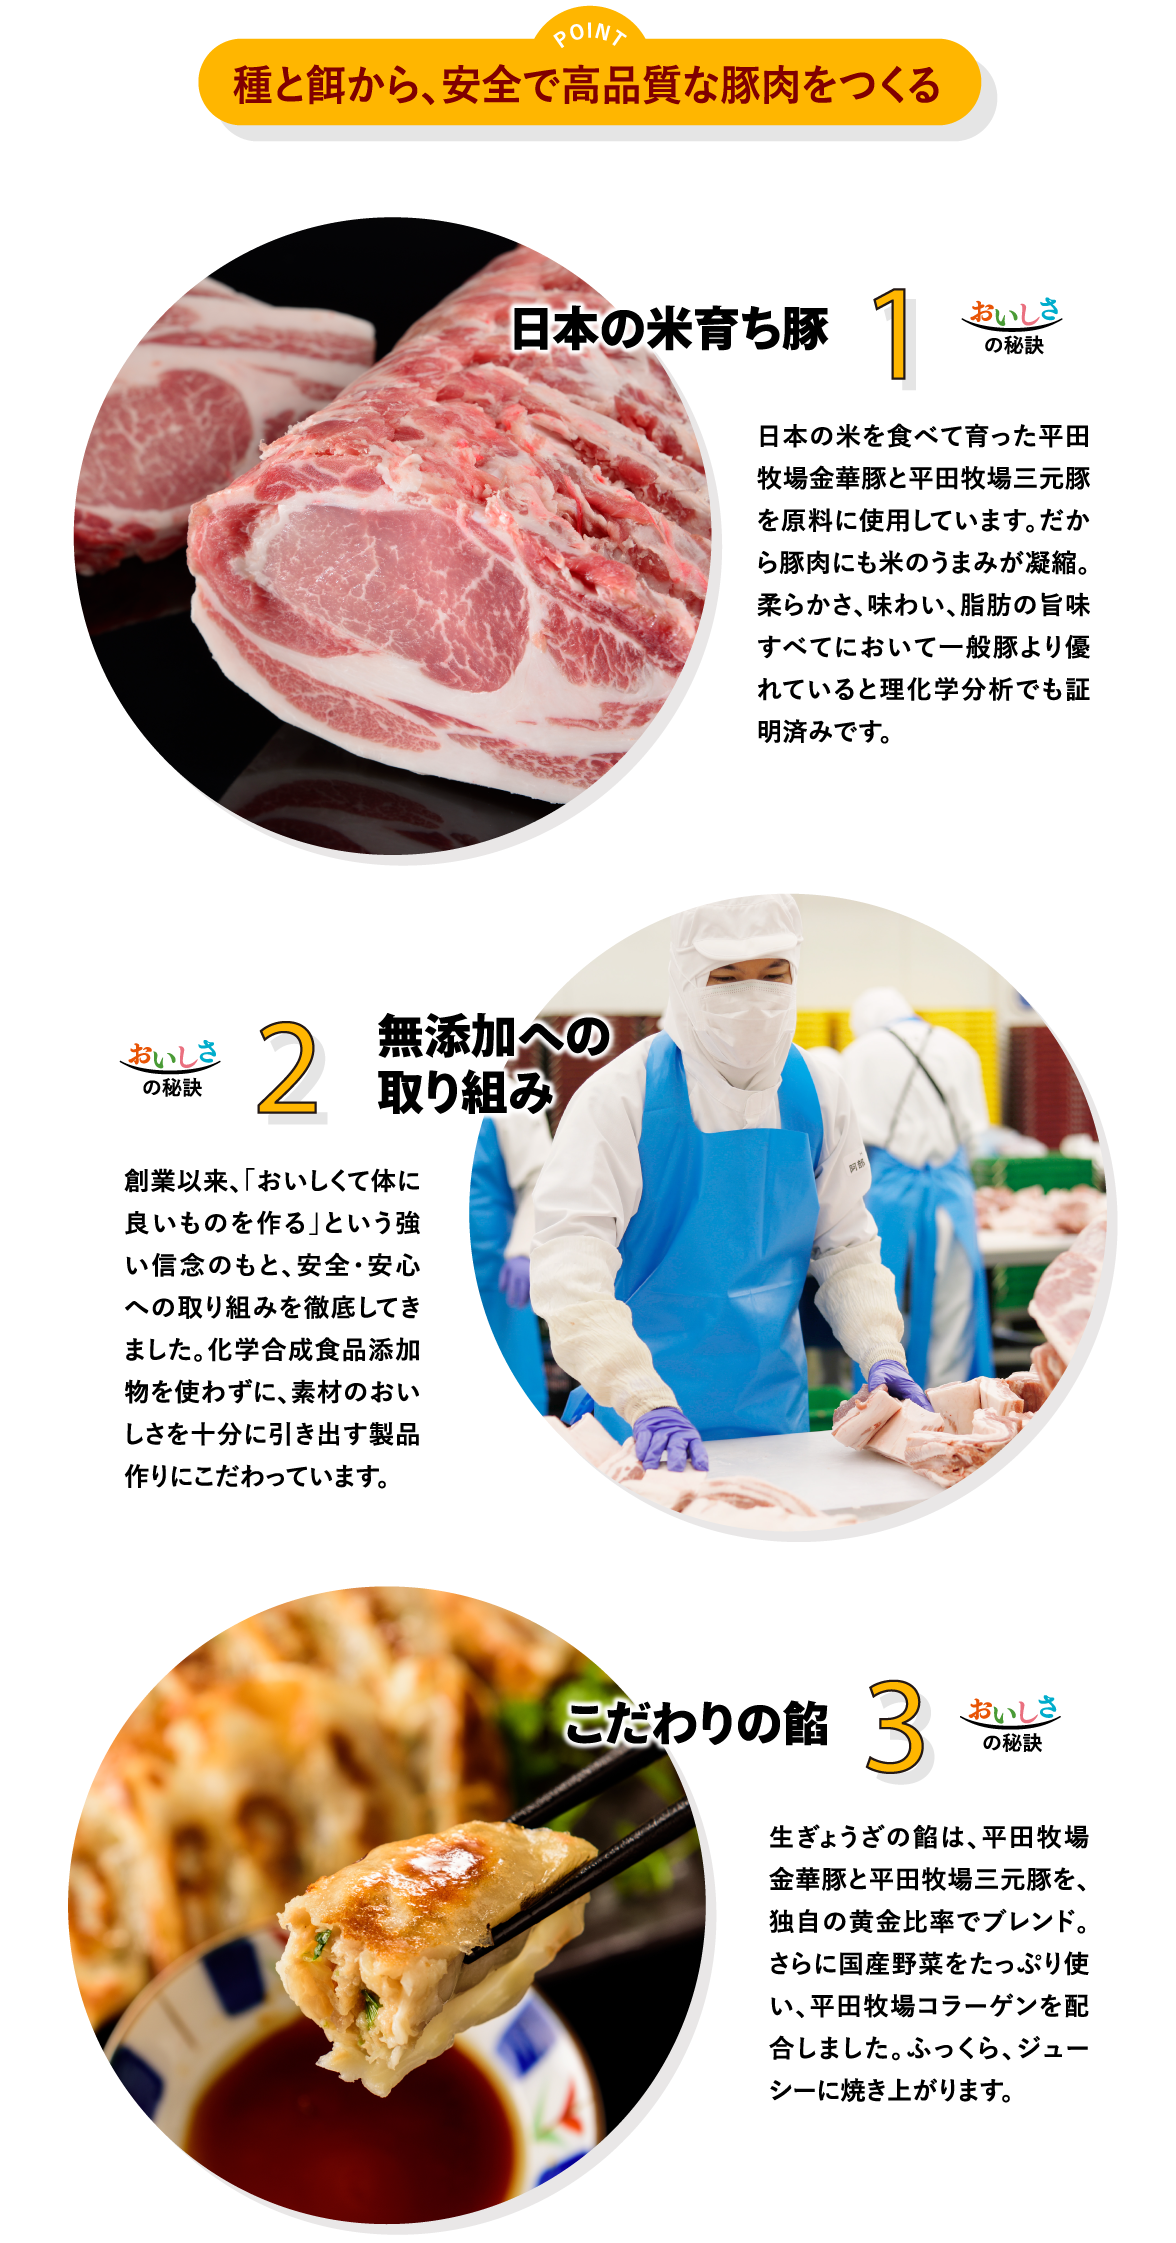 ポイント「種と餌から、安全で高品質な豚肉をつくる」／1.日本の米育ち豚　2.無添加への取り組み　3.こだわりの餡